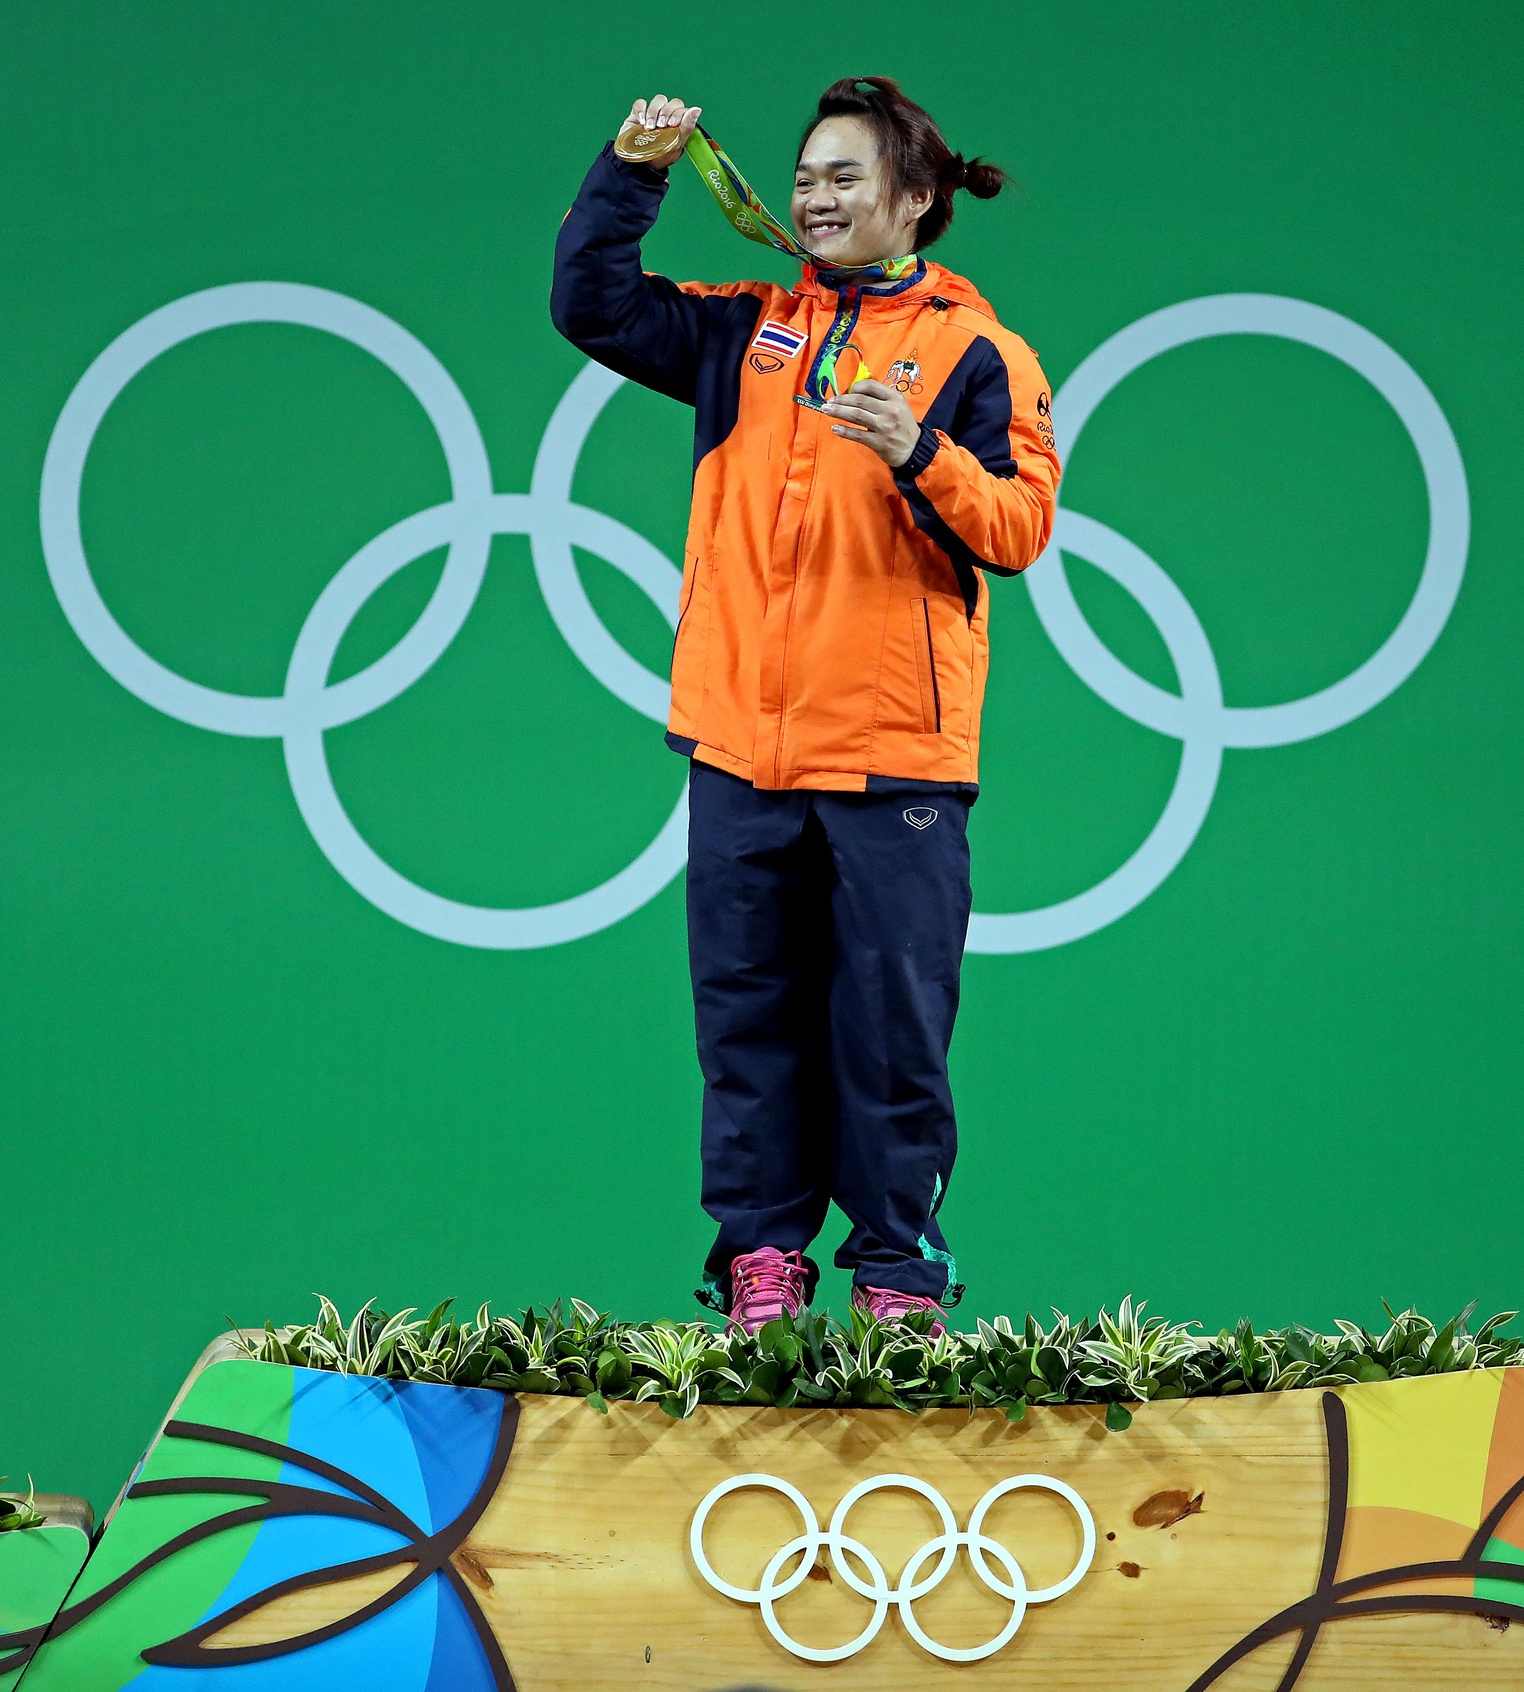 [高清組圖]女舉58公斤級泰國選手破奧運紀錄折桂